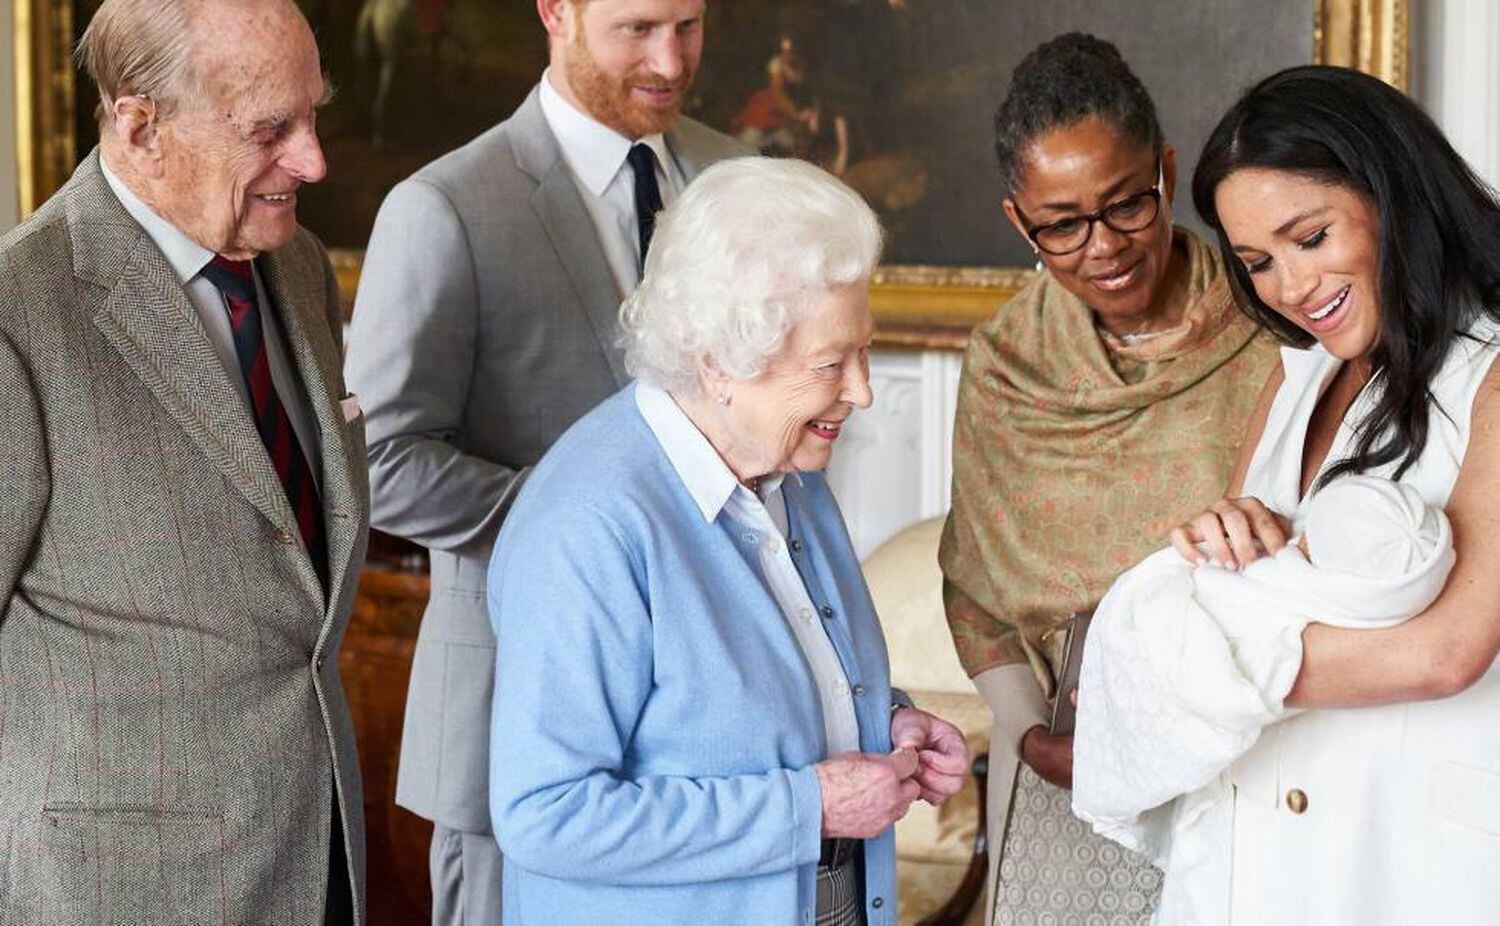 El príncipe Enrique de Inglaterra (segundo por la izquierda) y la duquesa de Sussex, Meghan Markle (a la derecha), presentan a su hijo recién nacido, Archie Harrison Mountbatten-Windsor, a la reina Isabel II de Inglaterra (centro) y a su esposo Felipe, duque de Edimburgo, en el castillo de Windsor (Reino Unido), junto a la madre de la duquesa de Sussex, Doria Ragland, el 8 de mayo de 2019.